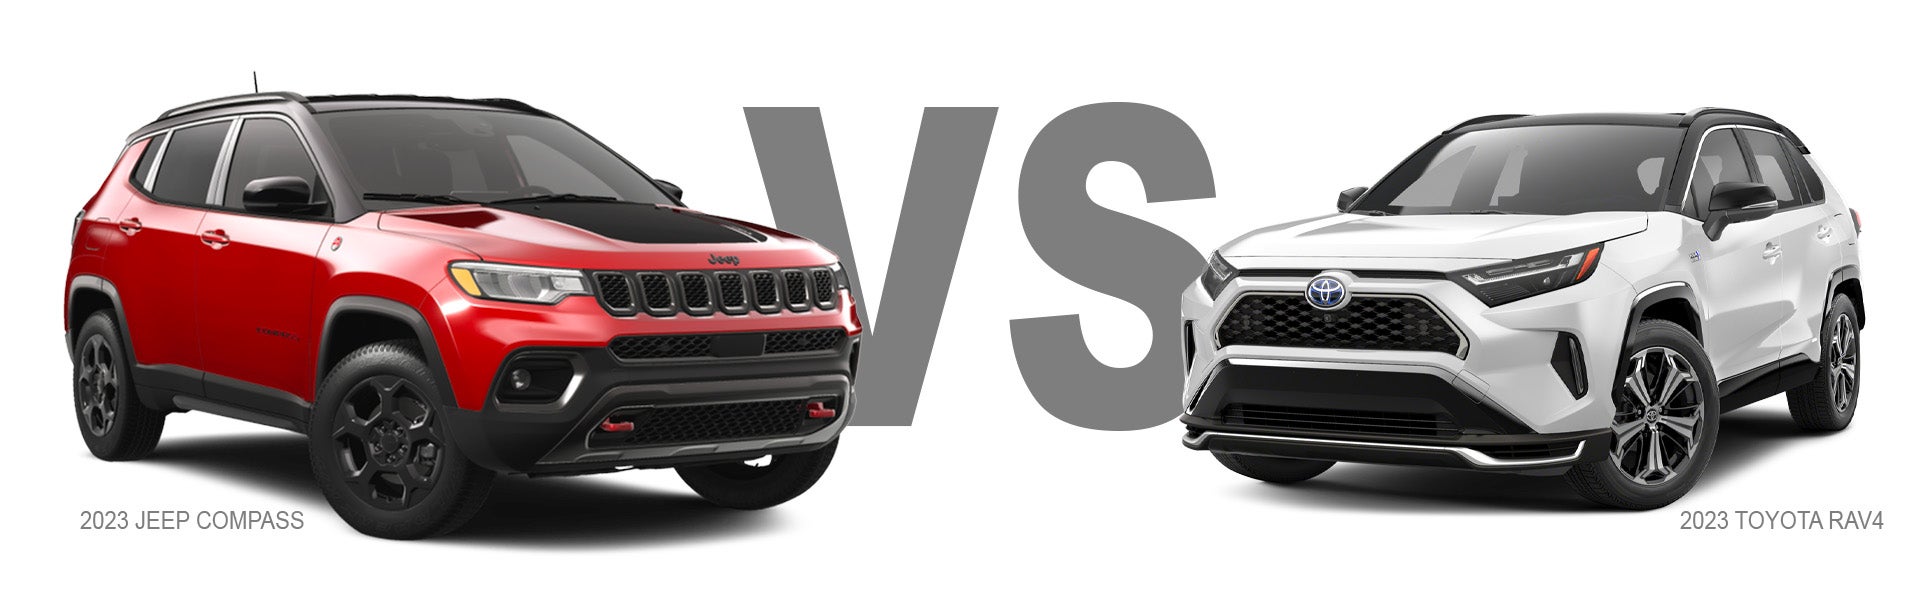 Jeep Compass vs Toyota RAV4 Compact CUV Comparison